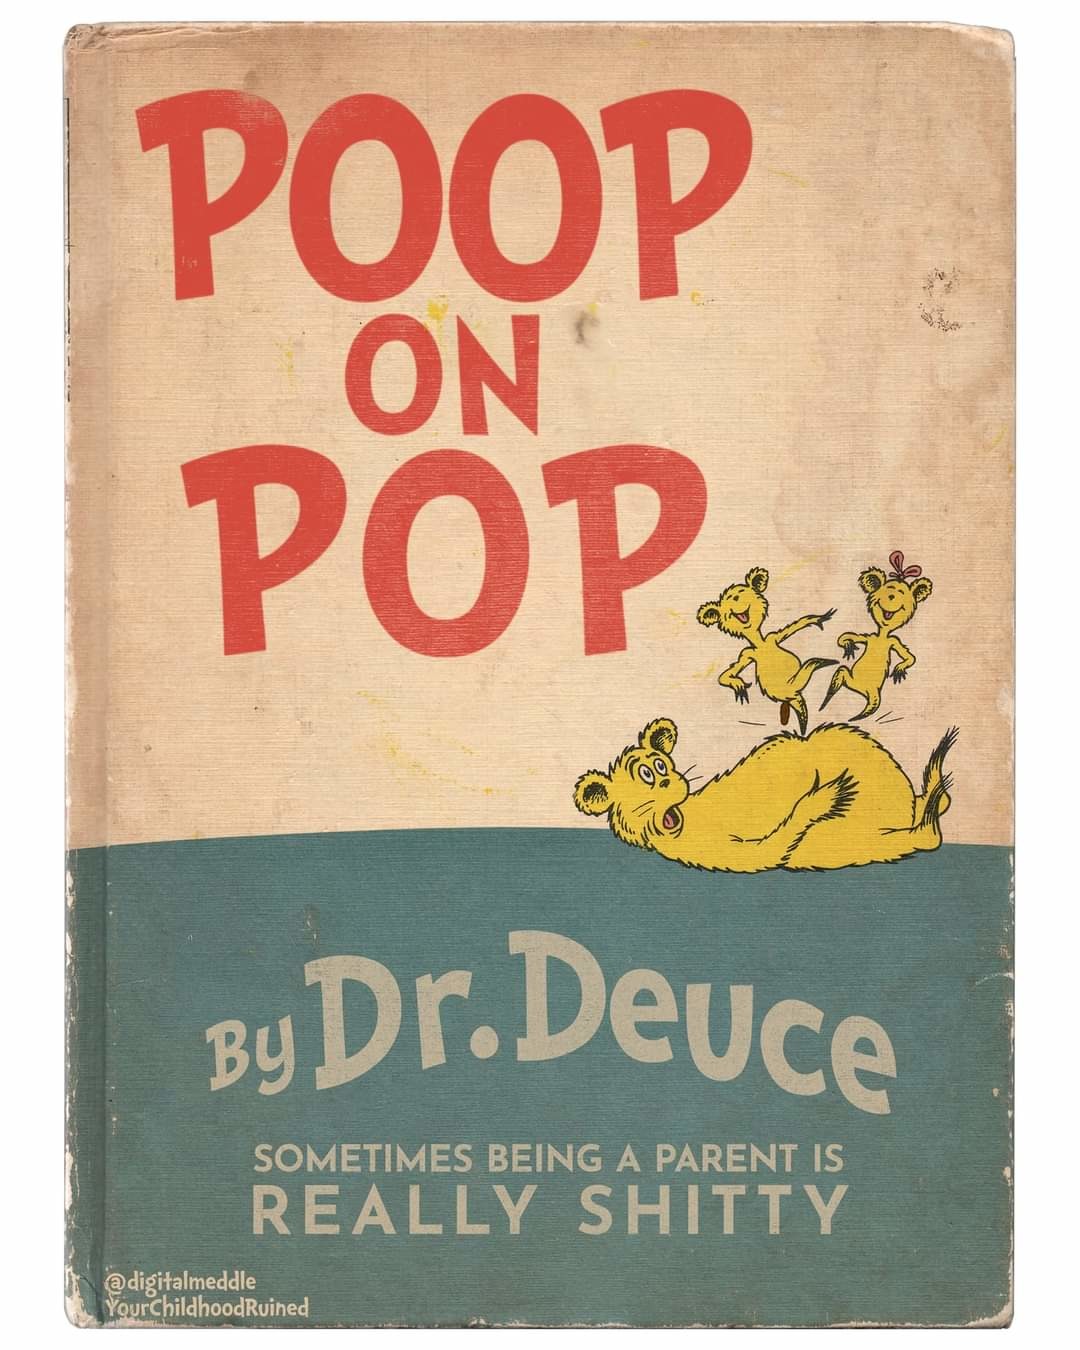 Poop on pop - meme